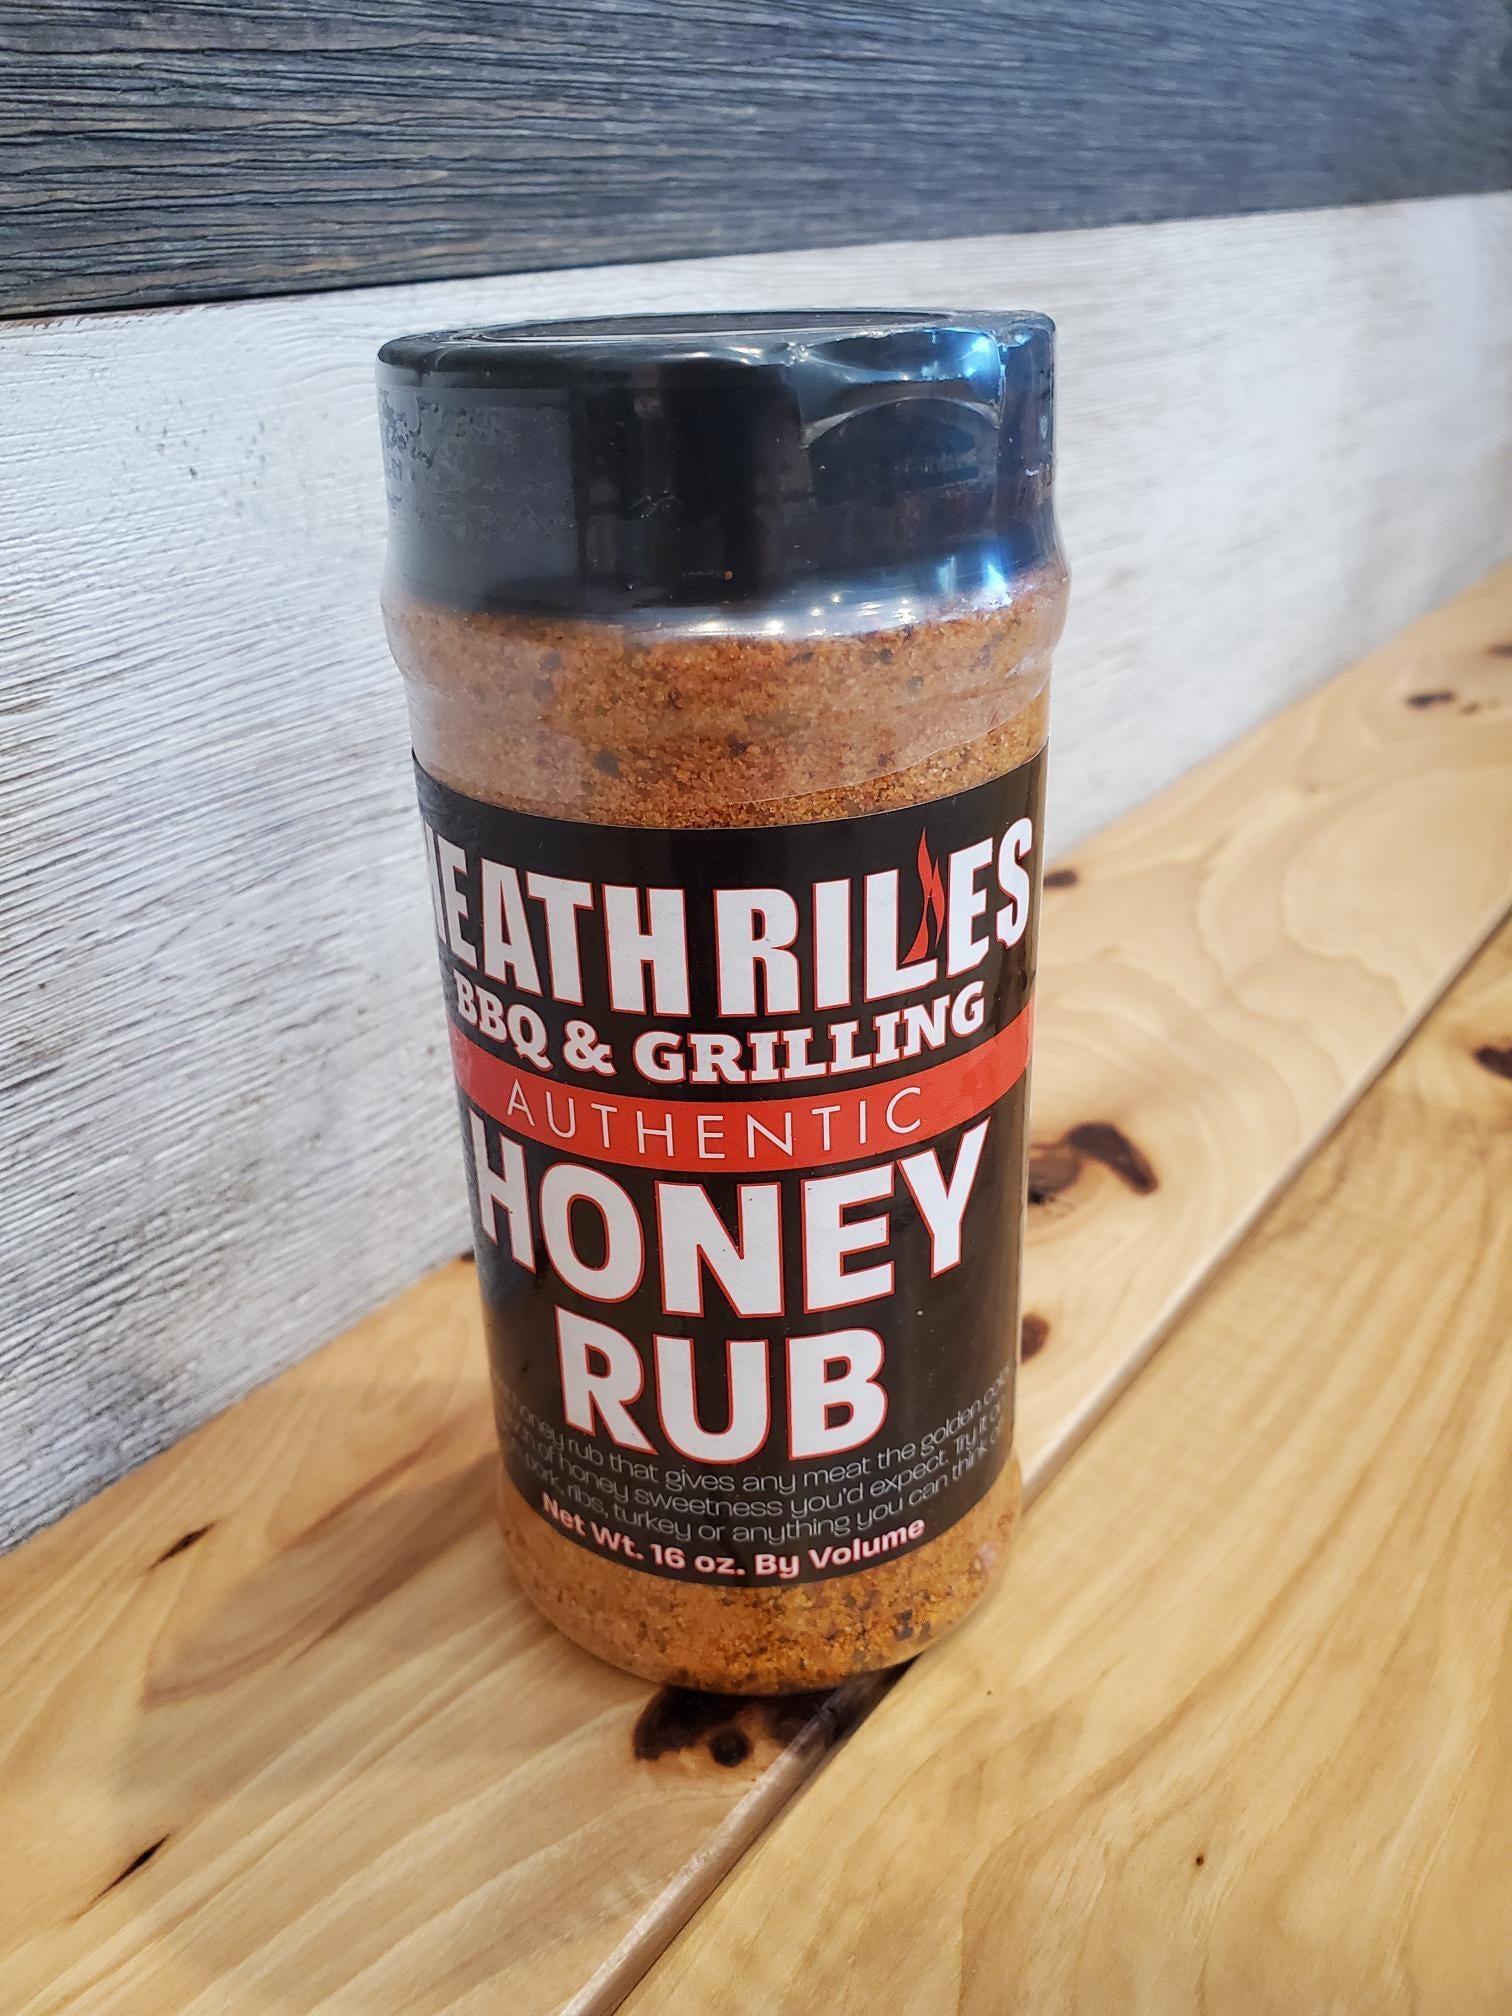 Heath Riles Honey BBQ Rub